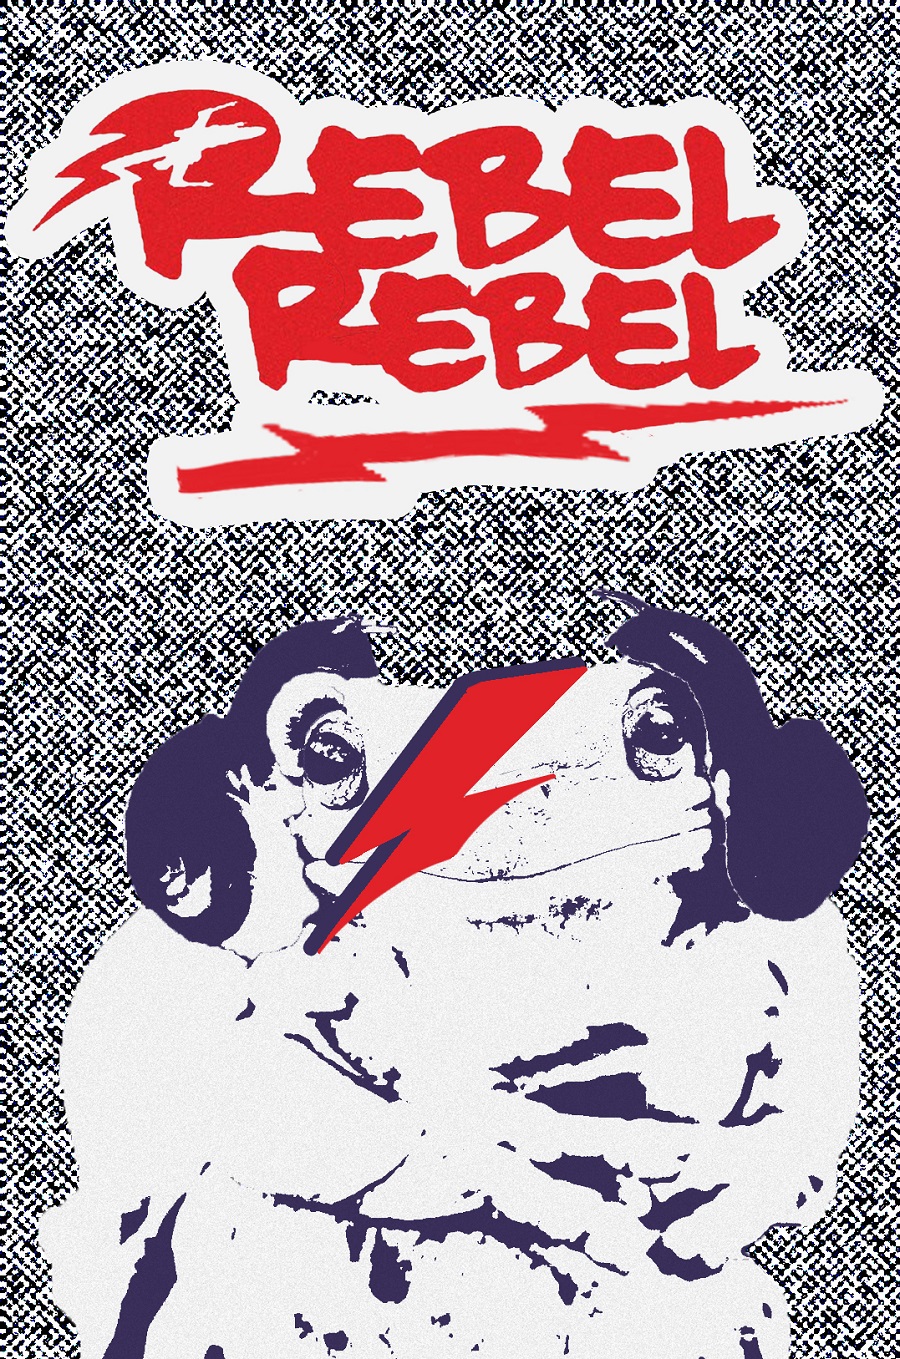 Rebel Rebel - Rana Leia